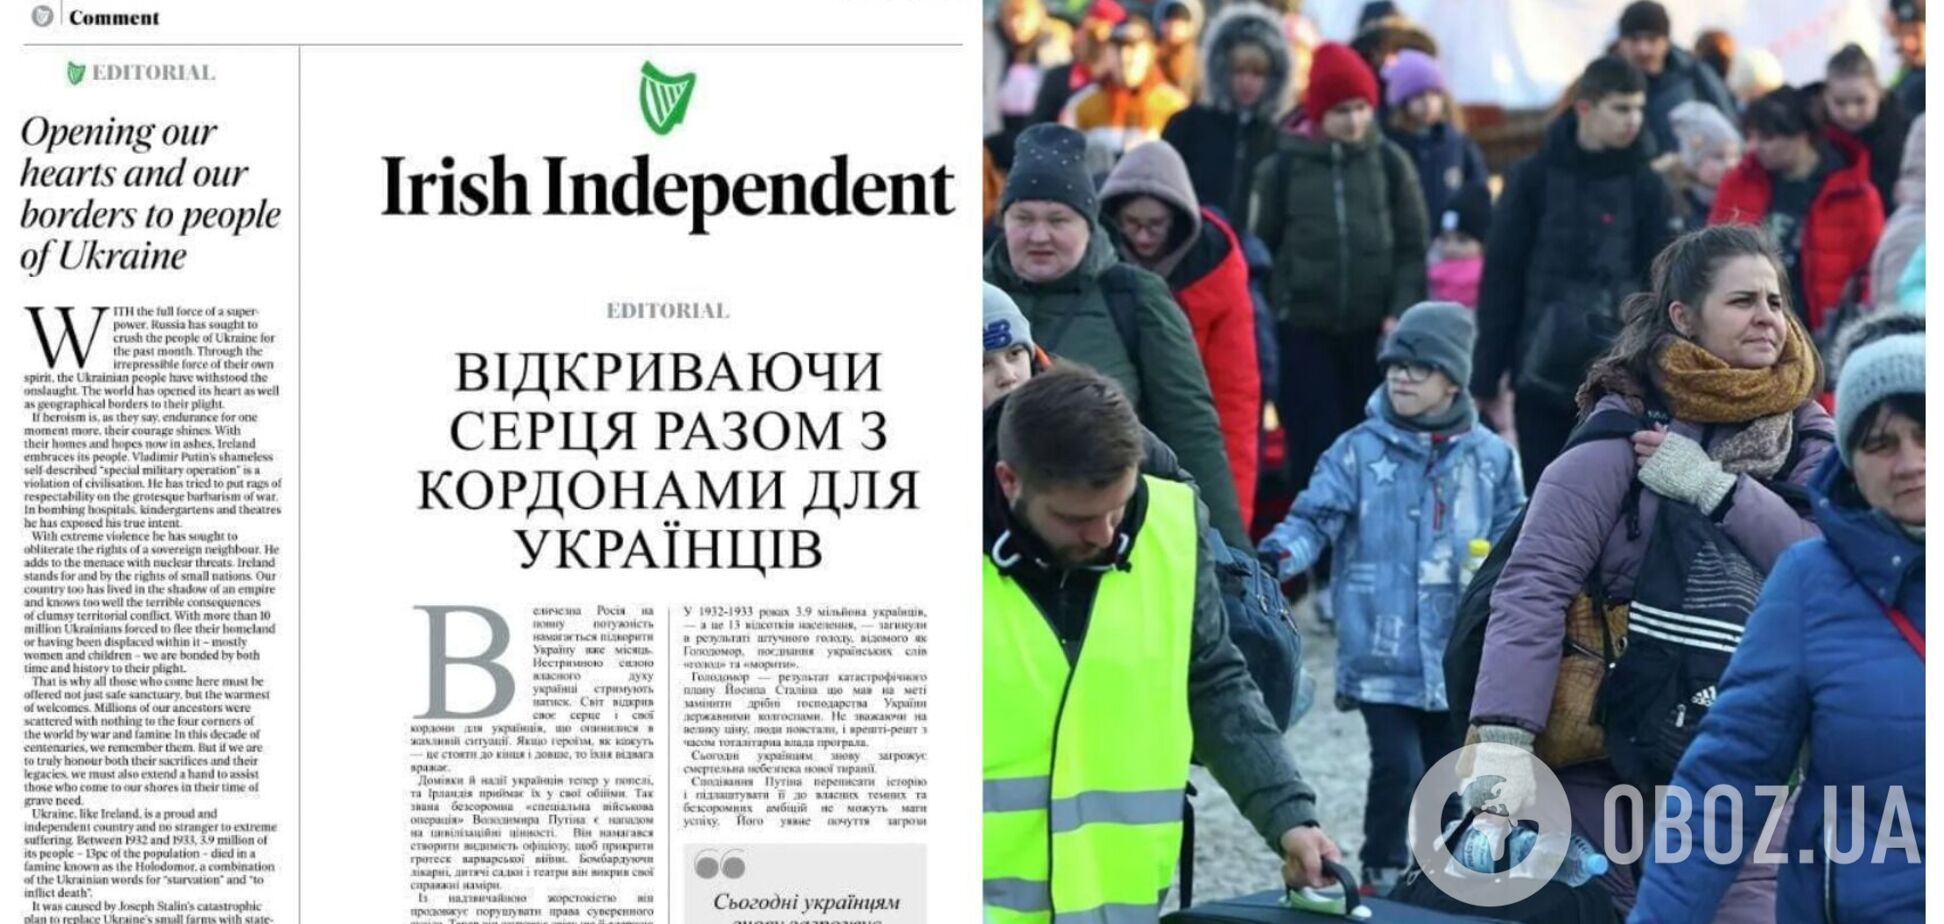 Найпопулярніша газета Ірландії Irish Independent опублікувала головну статтю українською мовою. Фото